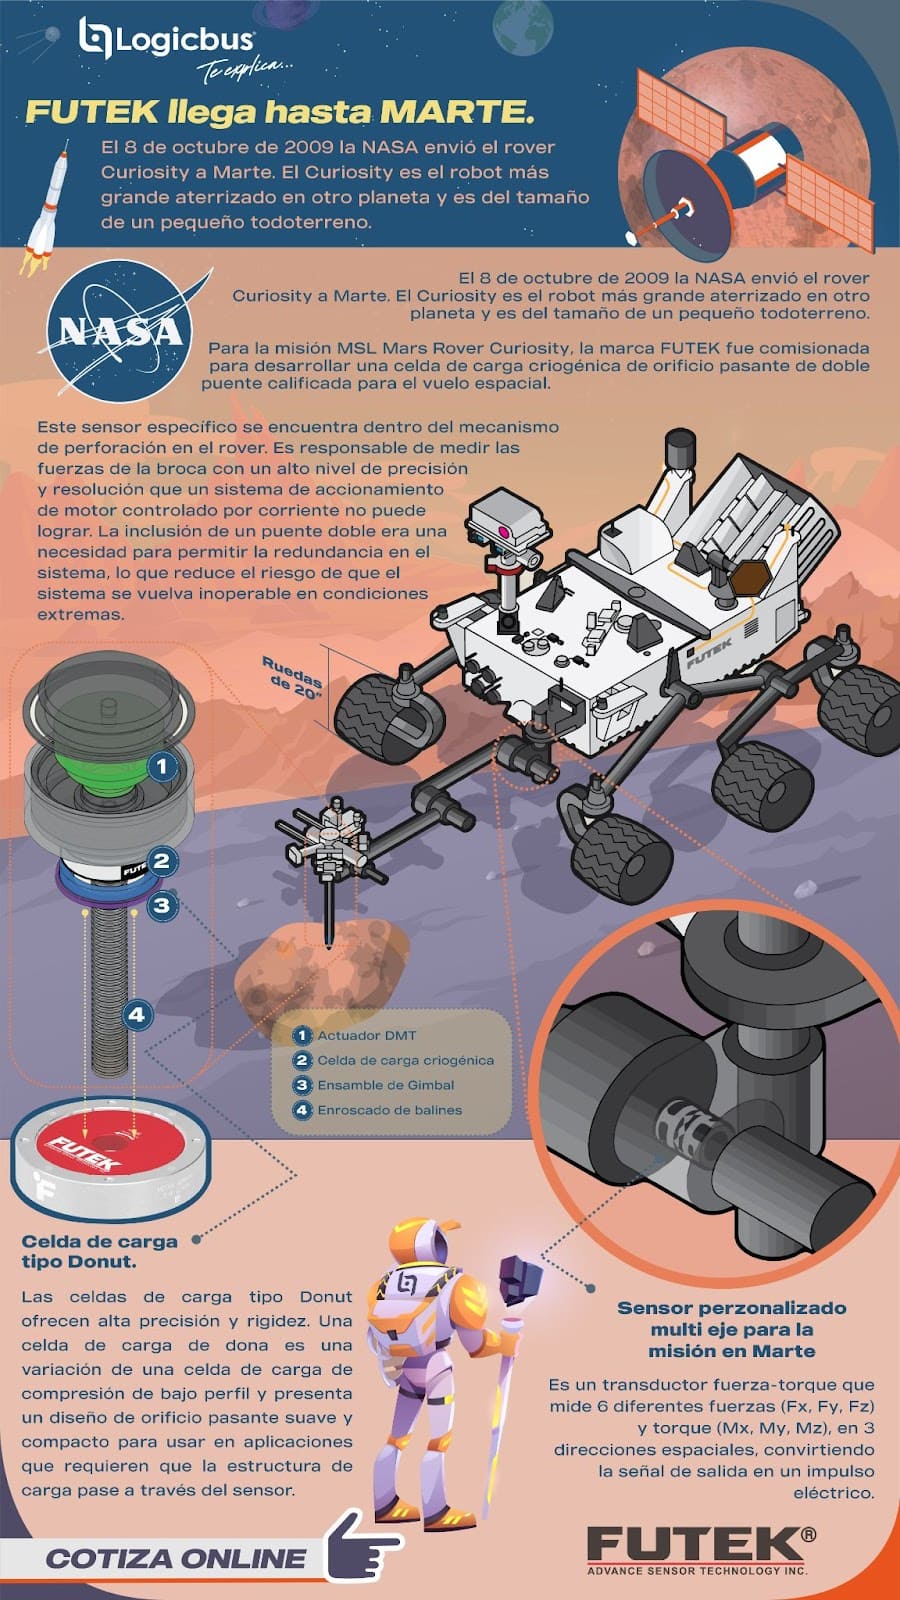 Celda de carga criogénica para su uso en el explorador de Marte